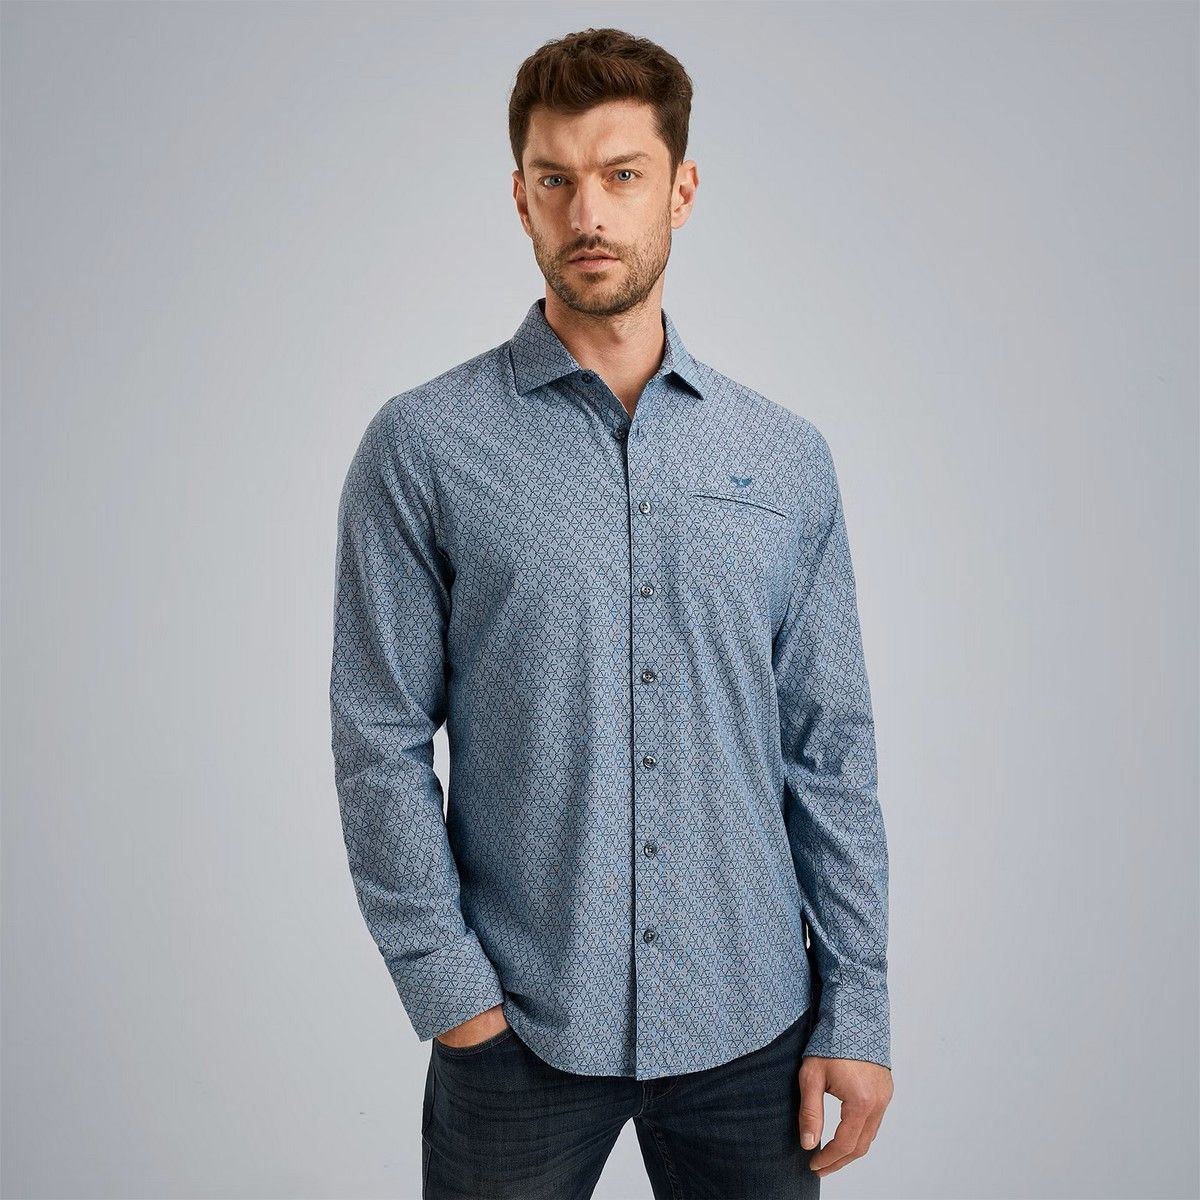 Long Sleeve Shirt Print On YD Chec